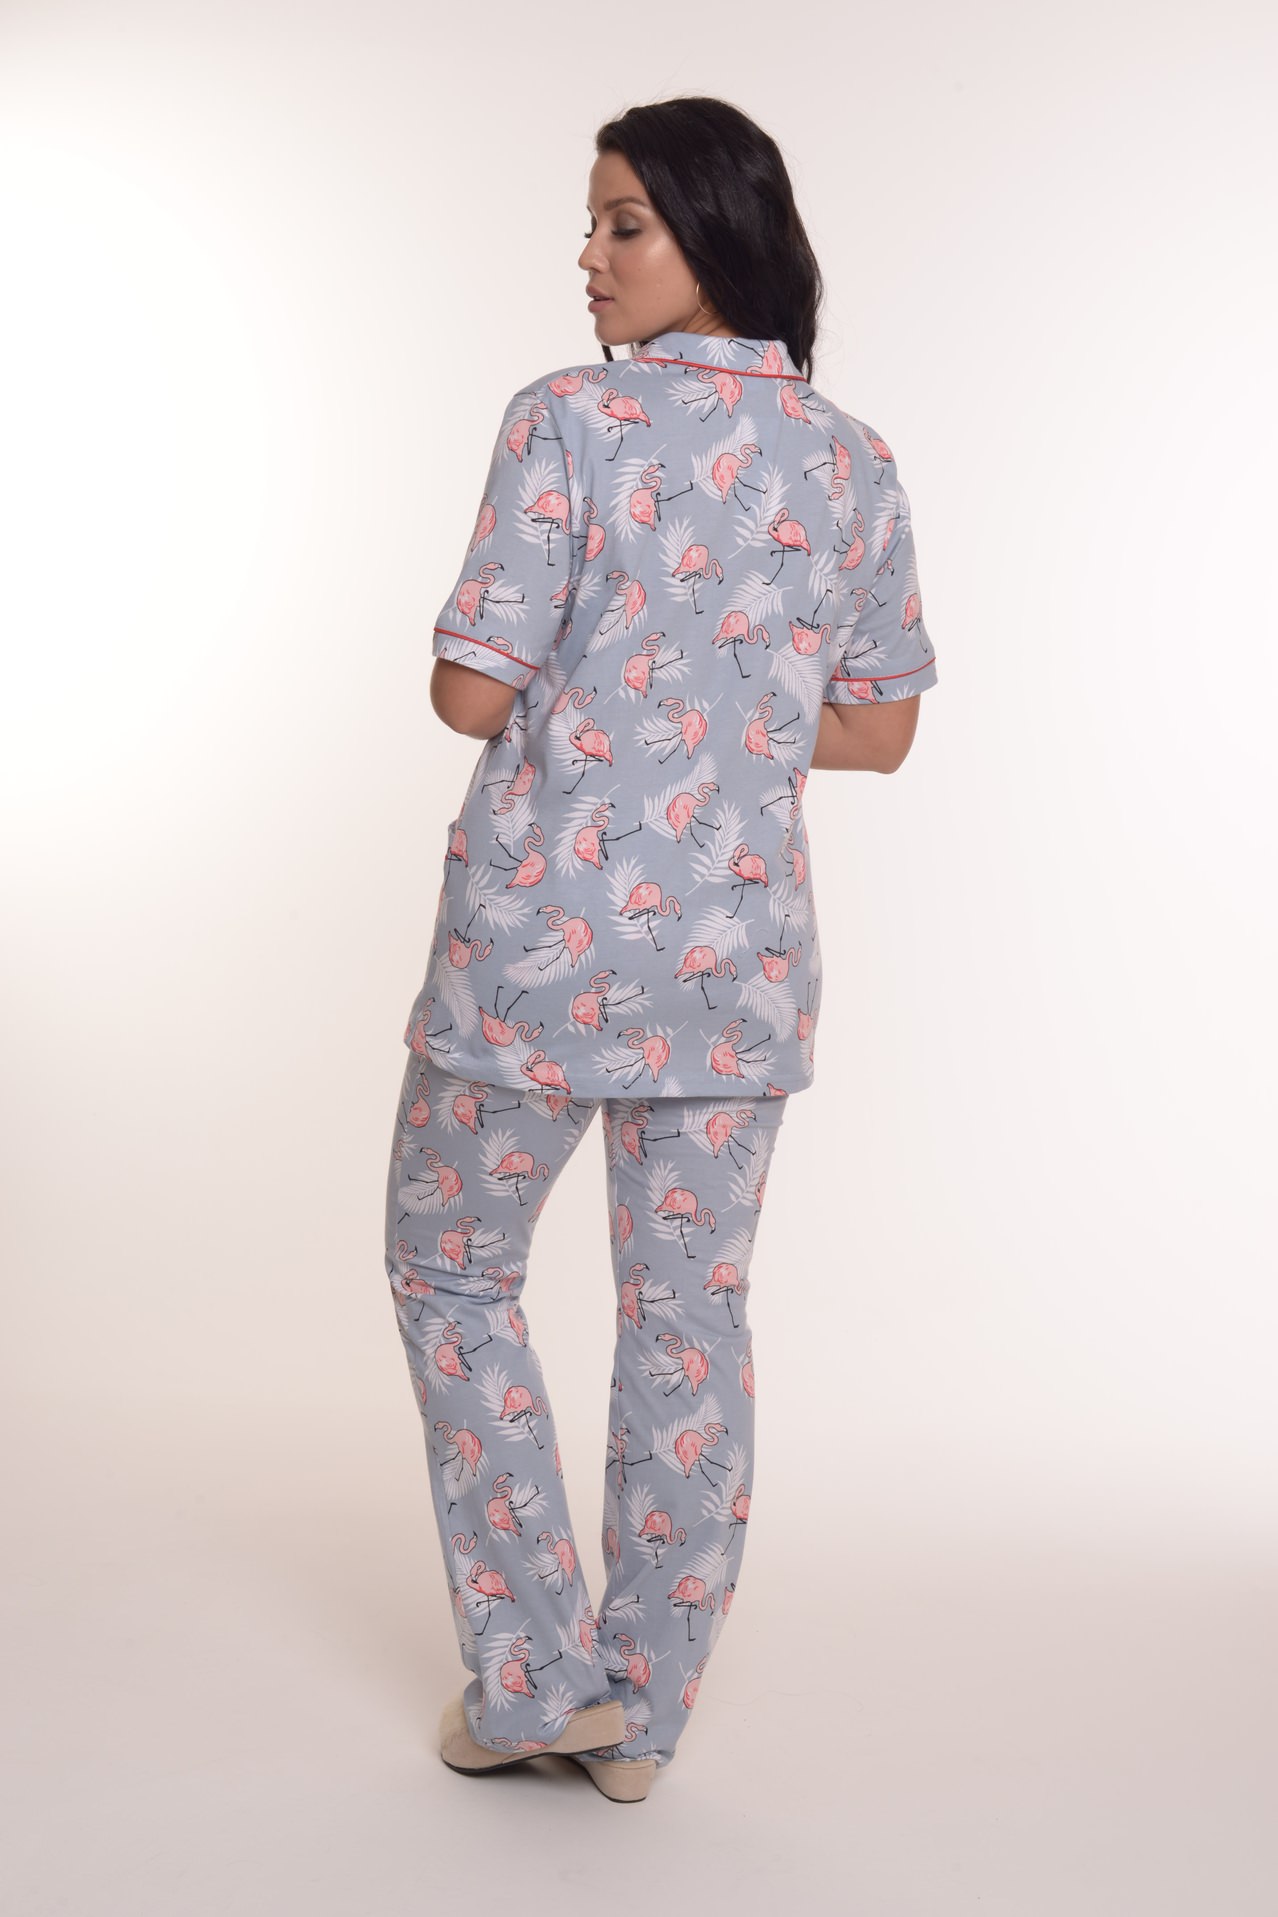 Фото товара 21345, серая пижама с фламинго